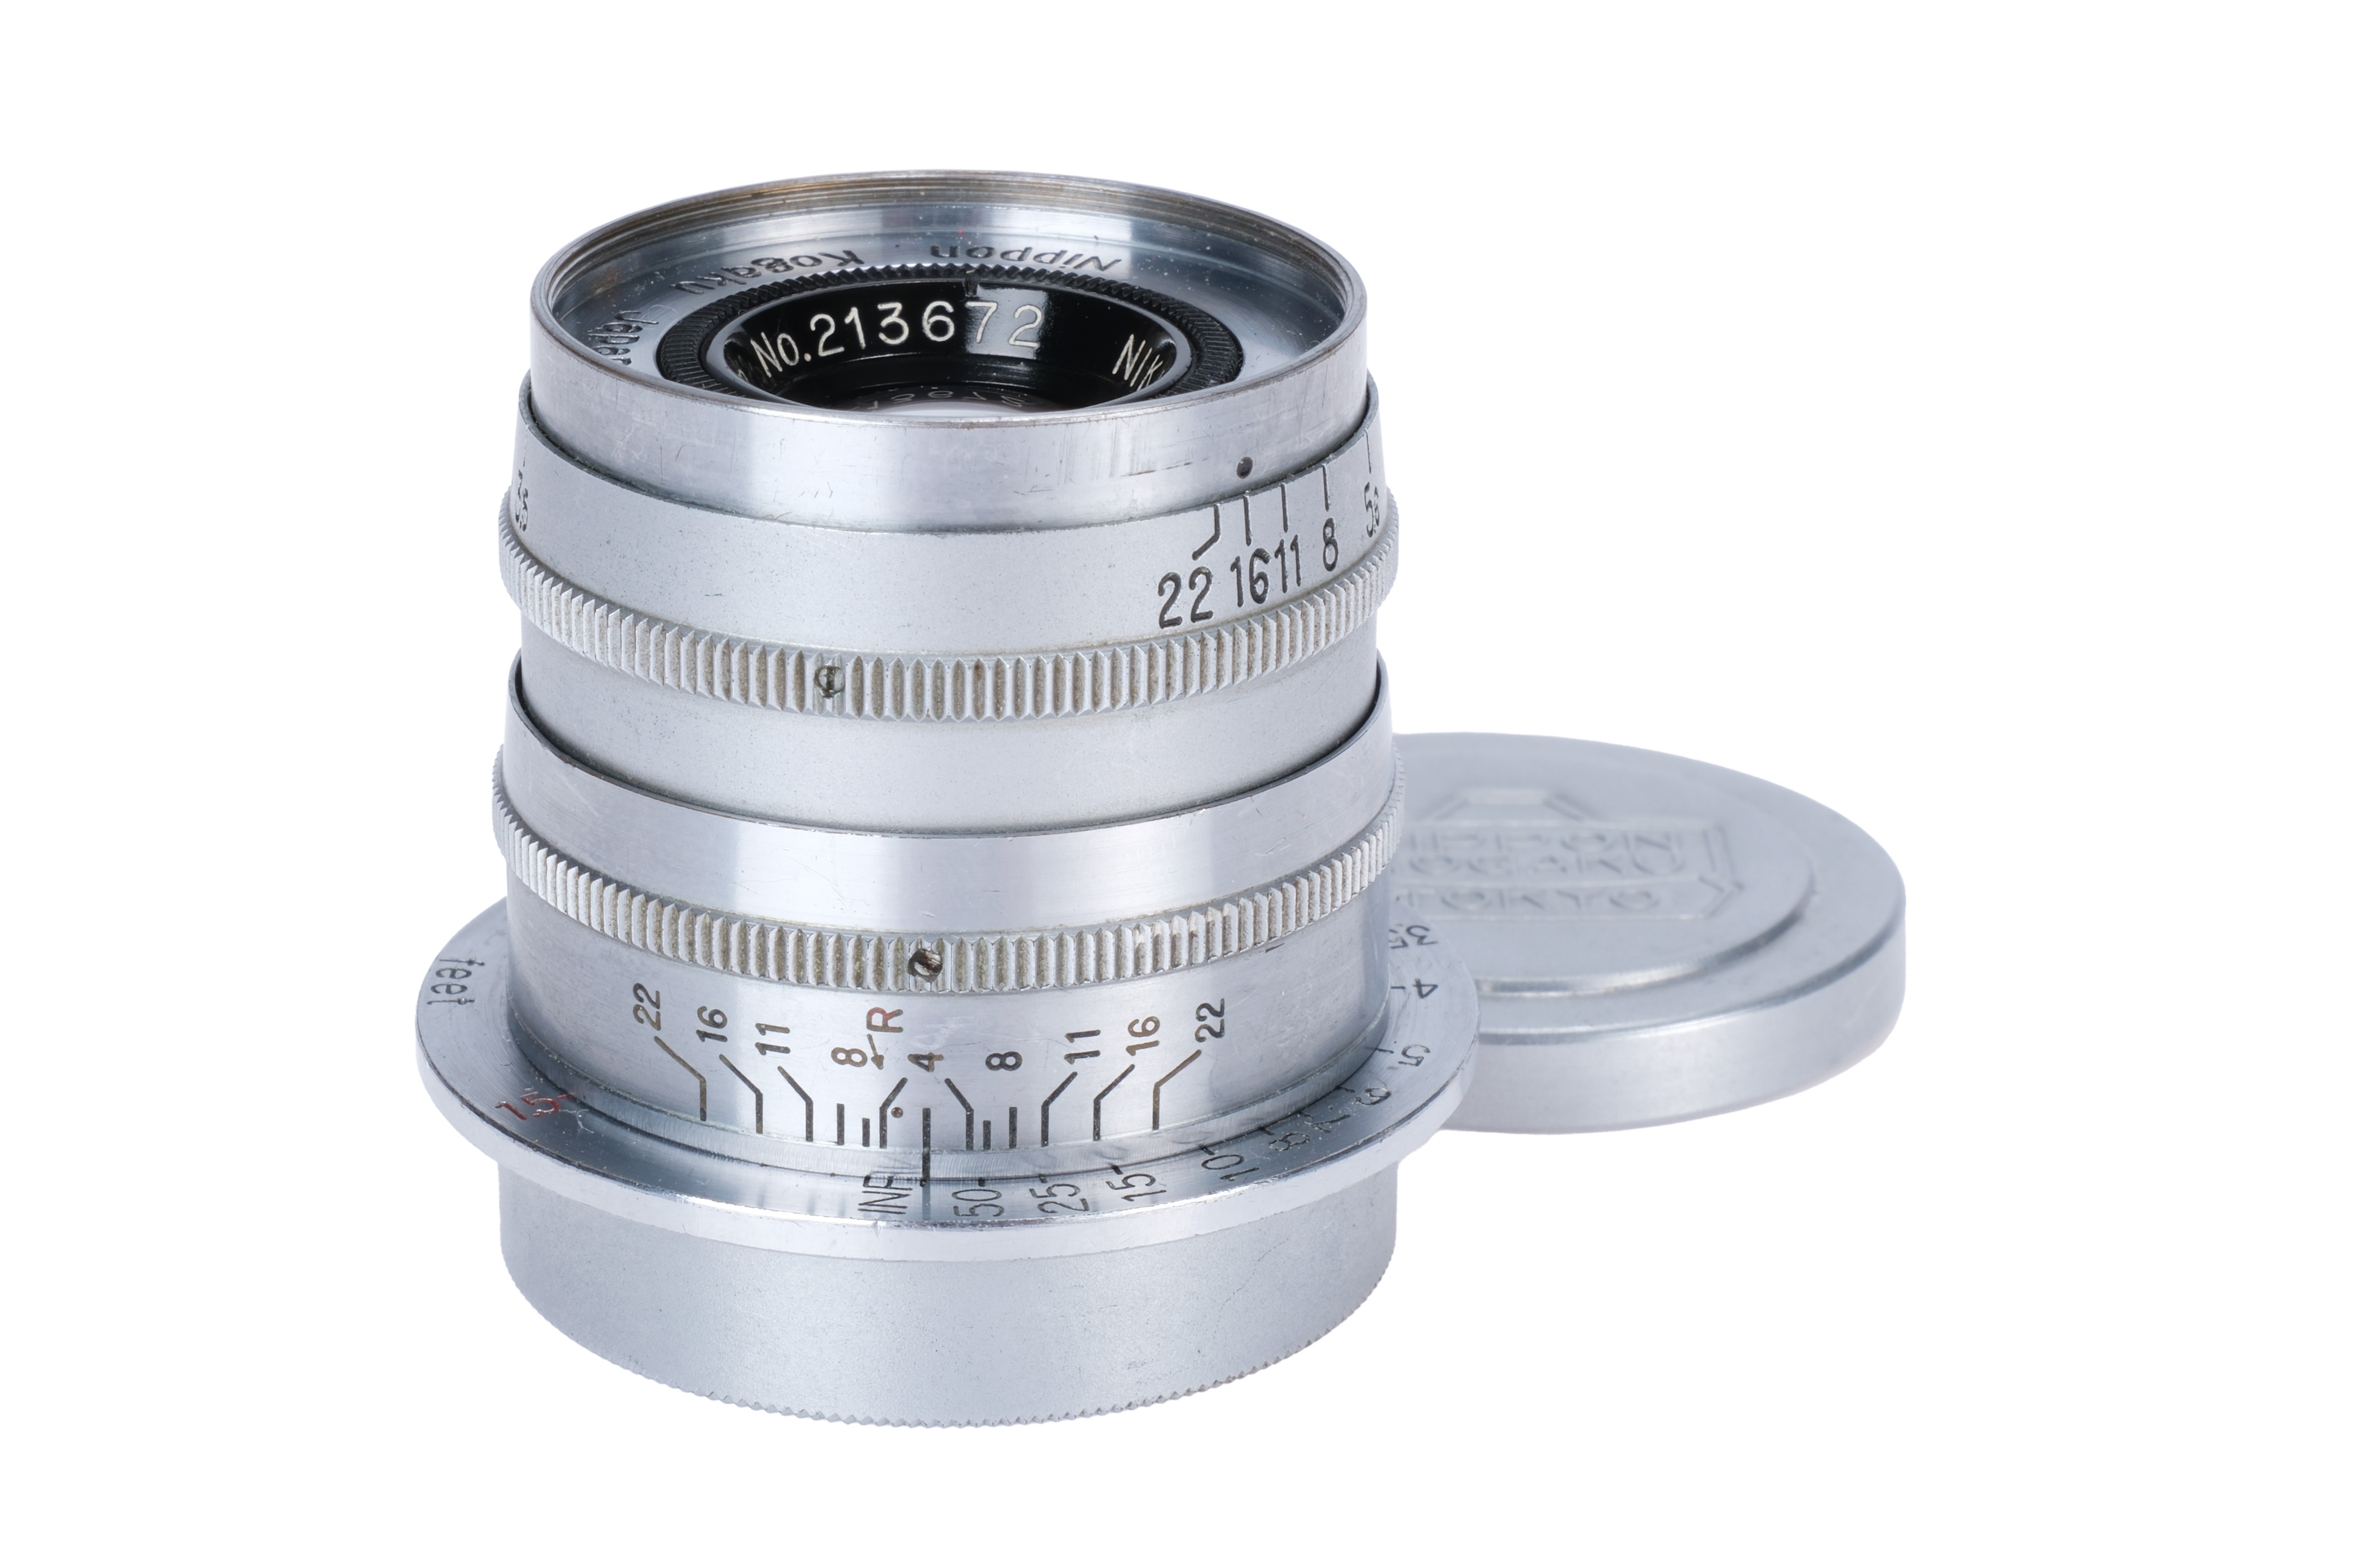 A Nikon Rigid Nikkor-Q.C. f/3.5 50mm Lens,